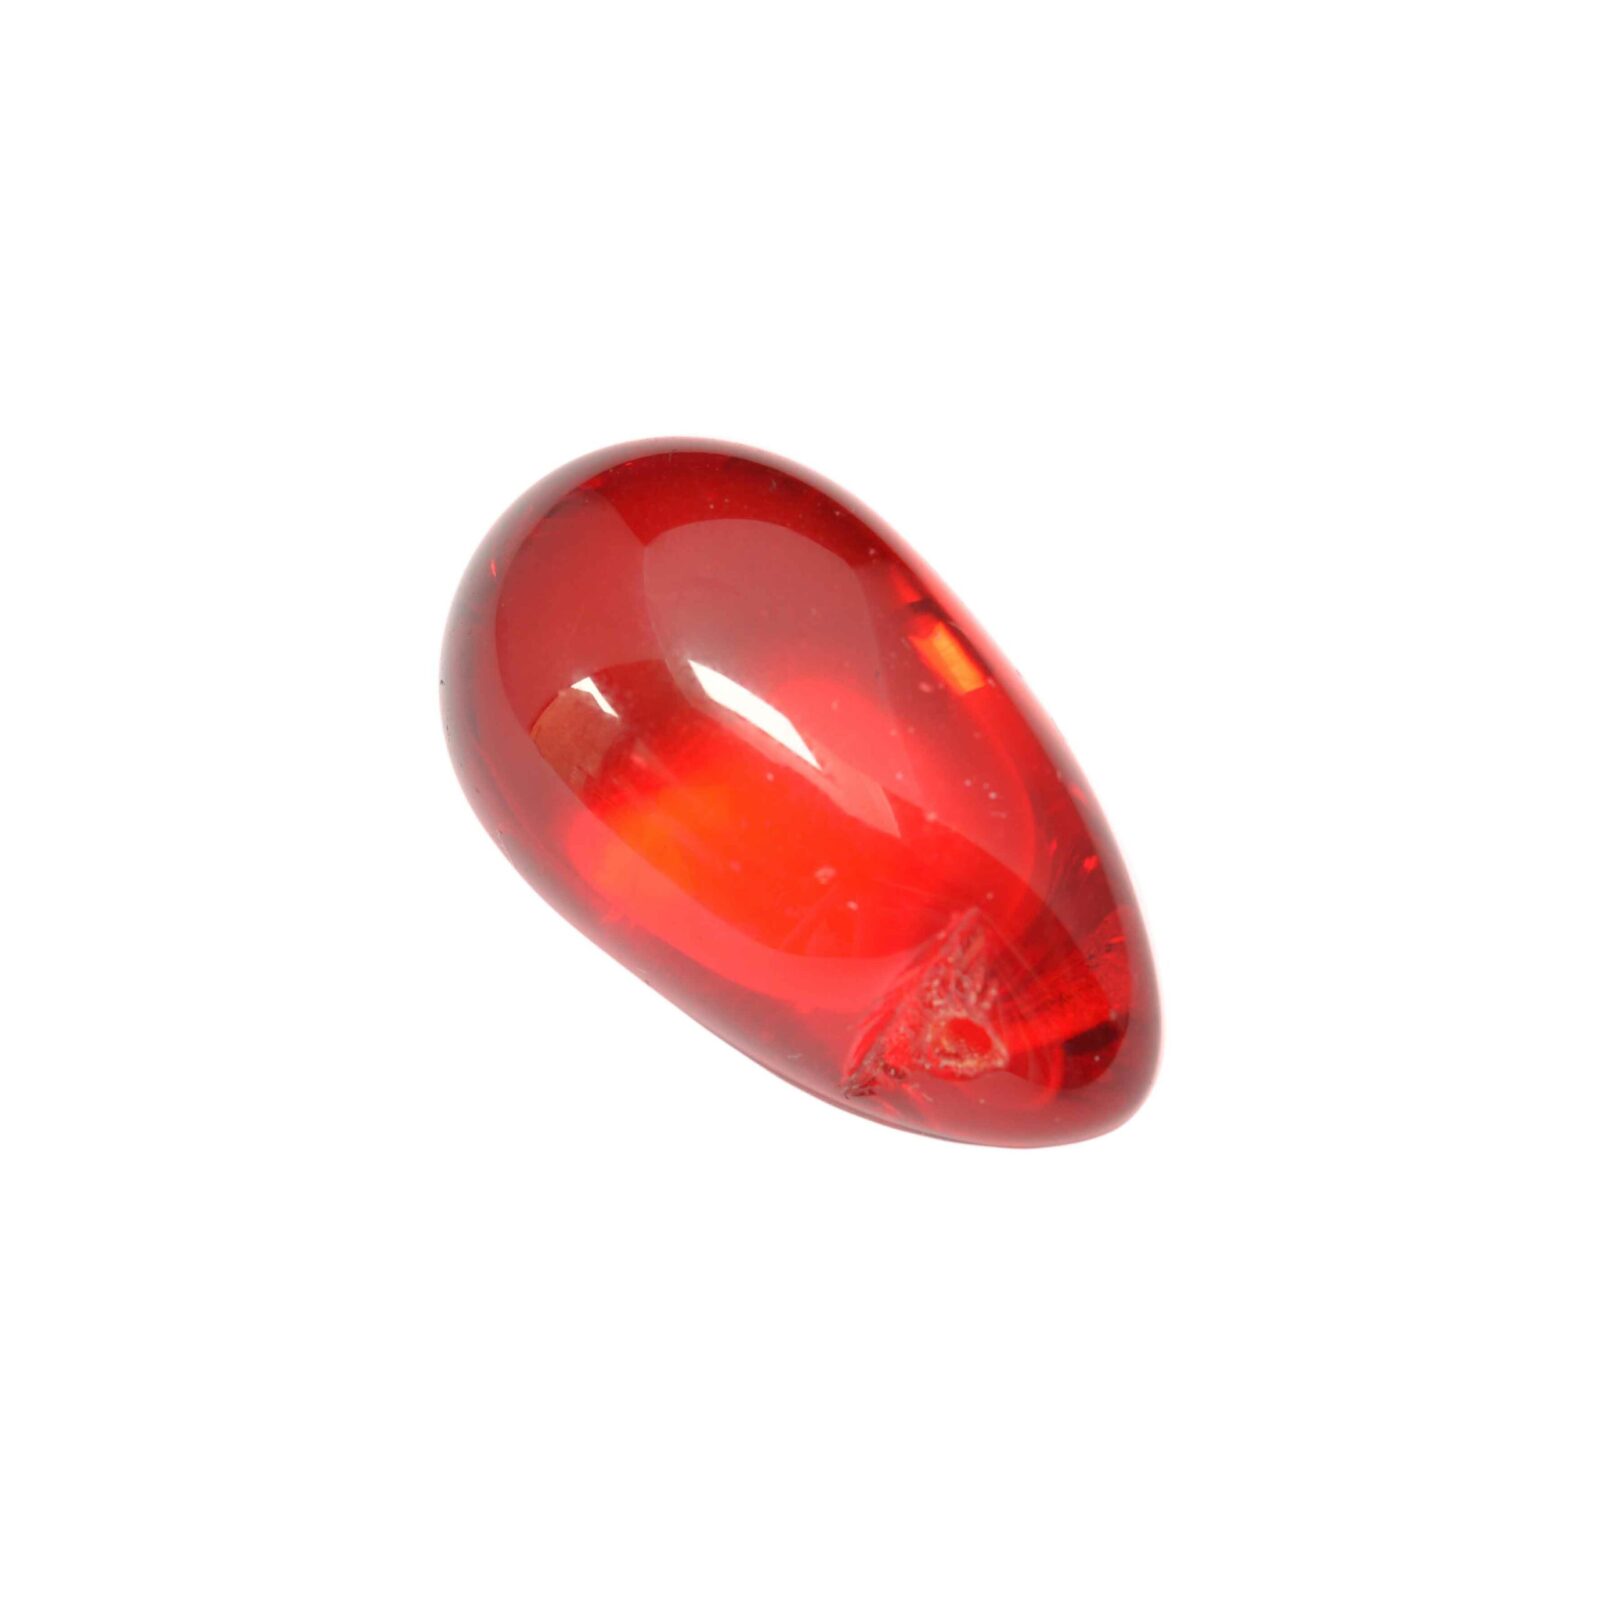 Rode glaskraal in de vorm van een druppel